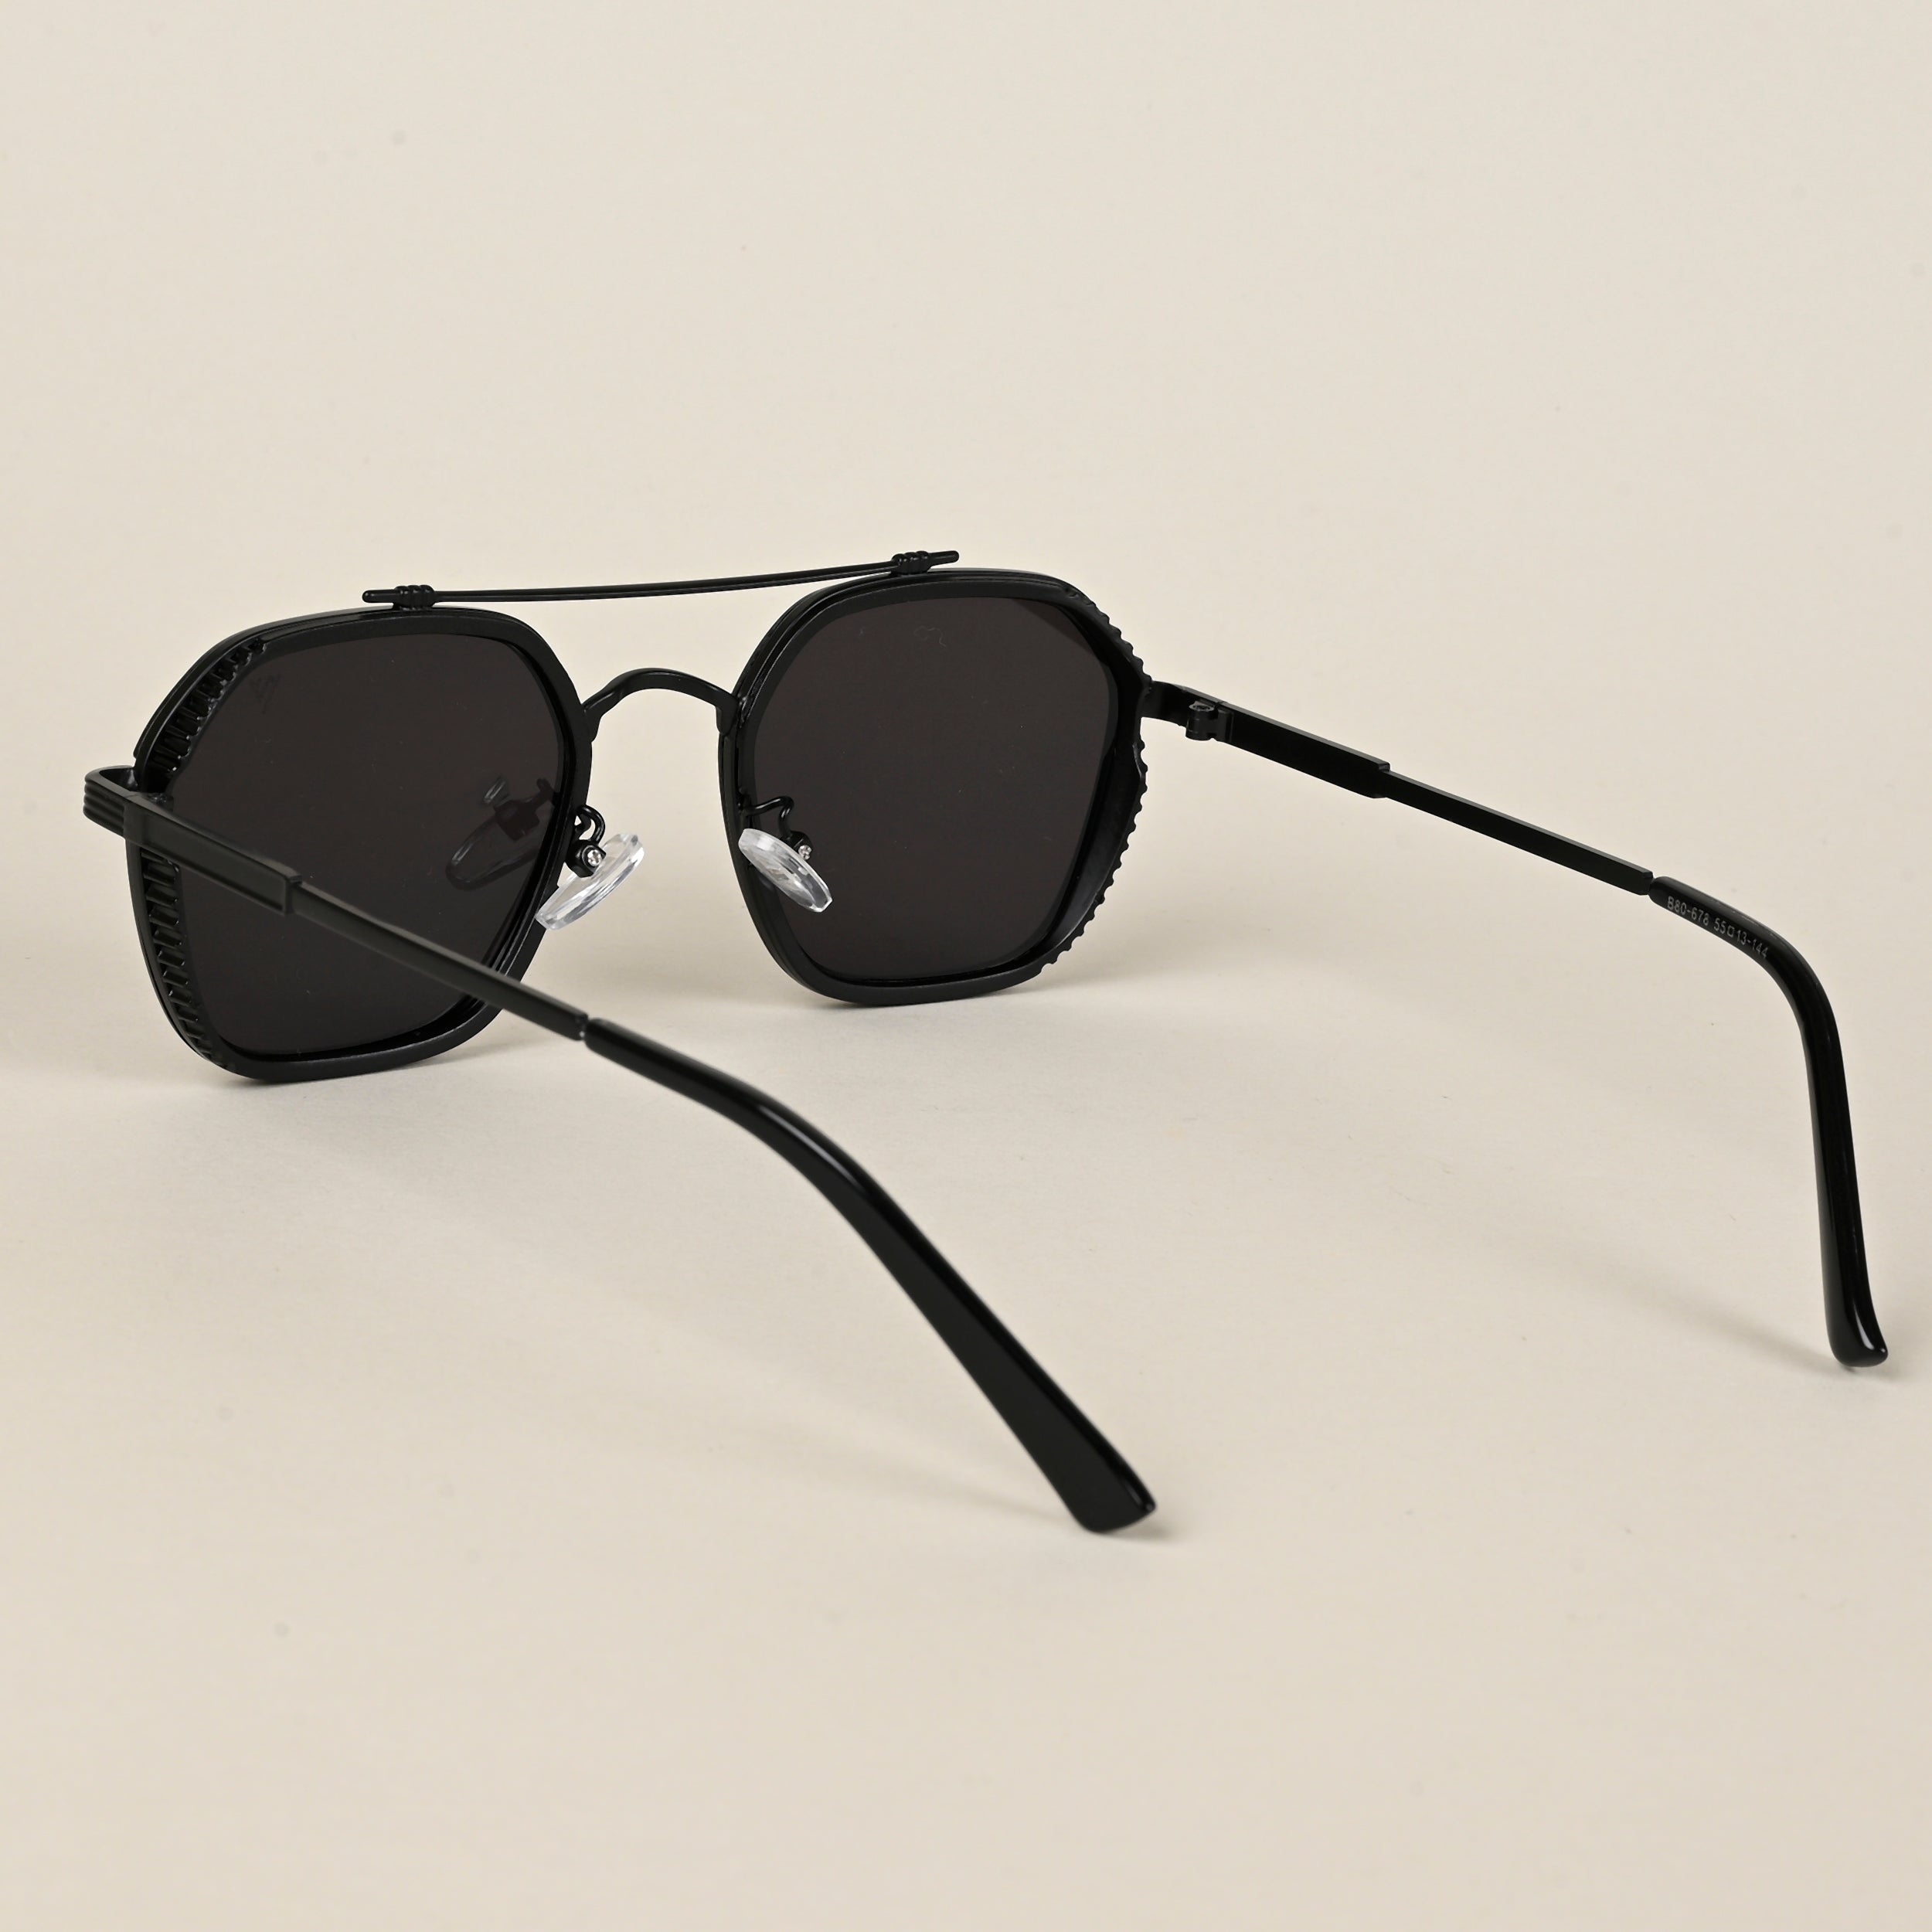 Voyage Wayfarer Sunglasses for Men & Women (Black Lens | Black Frame - MG5197)